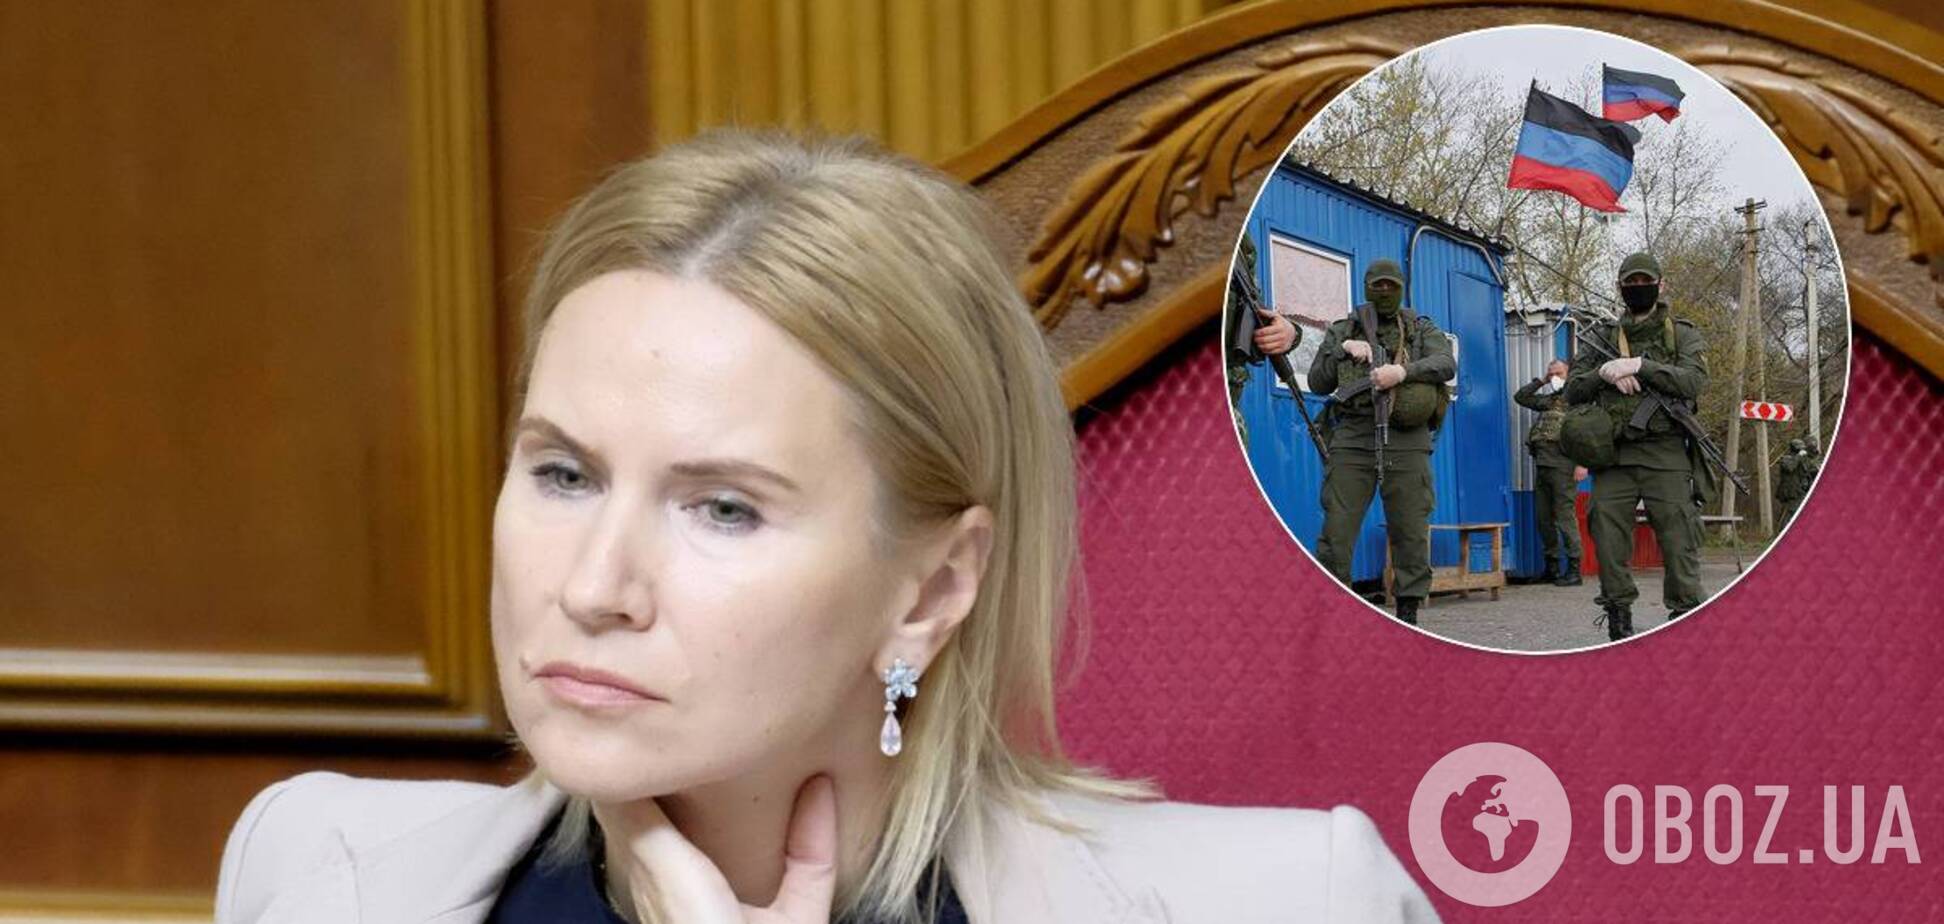 Олена Кондратюк заявила, що виборів на Донбасі не буде, поки Росія не виведе війська